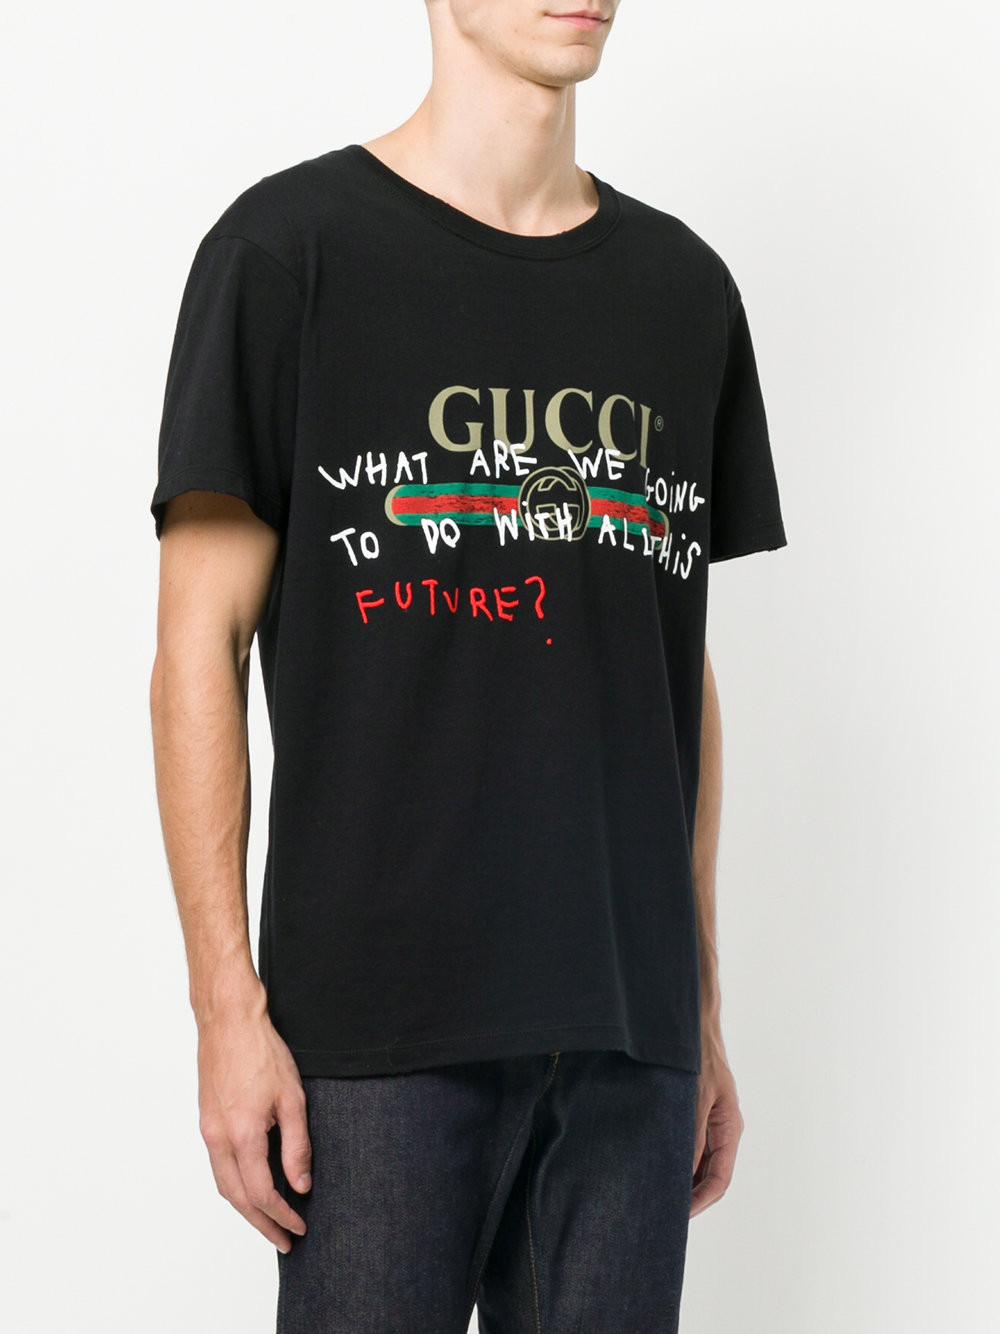 Gucci Coco Capitan SAVE 52% - mpgc.net